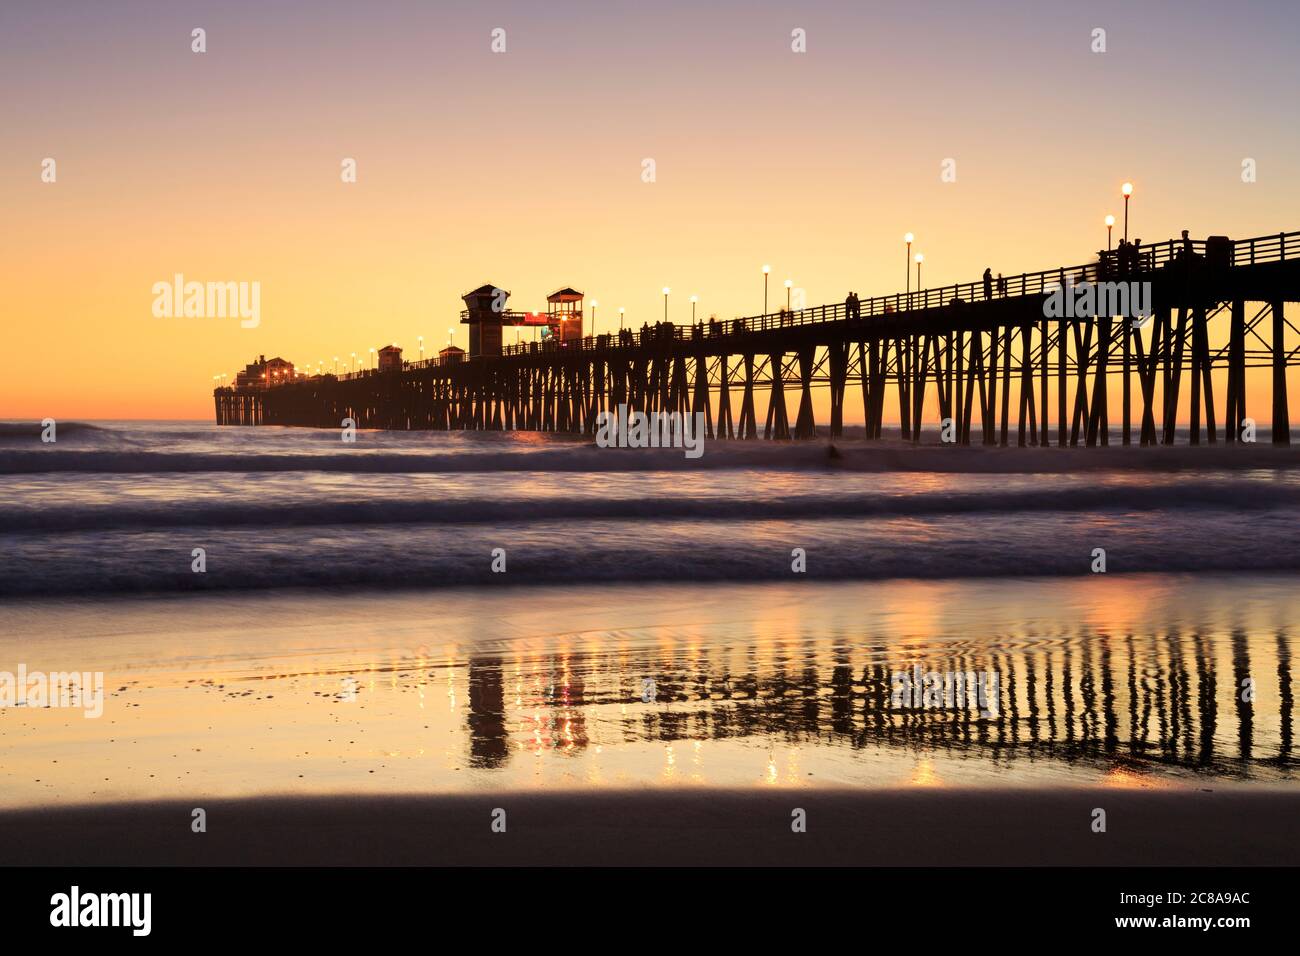 Sunset at Oceanside Pier, Oceanside, California, USA Stock Photo